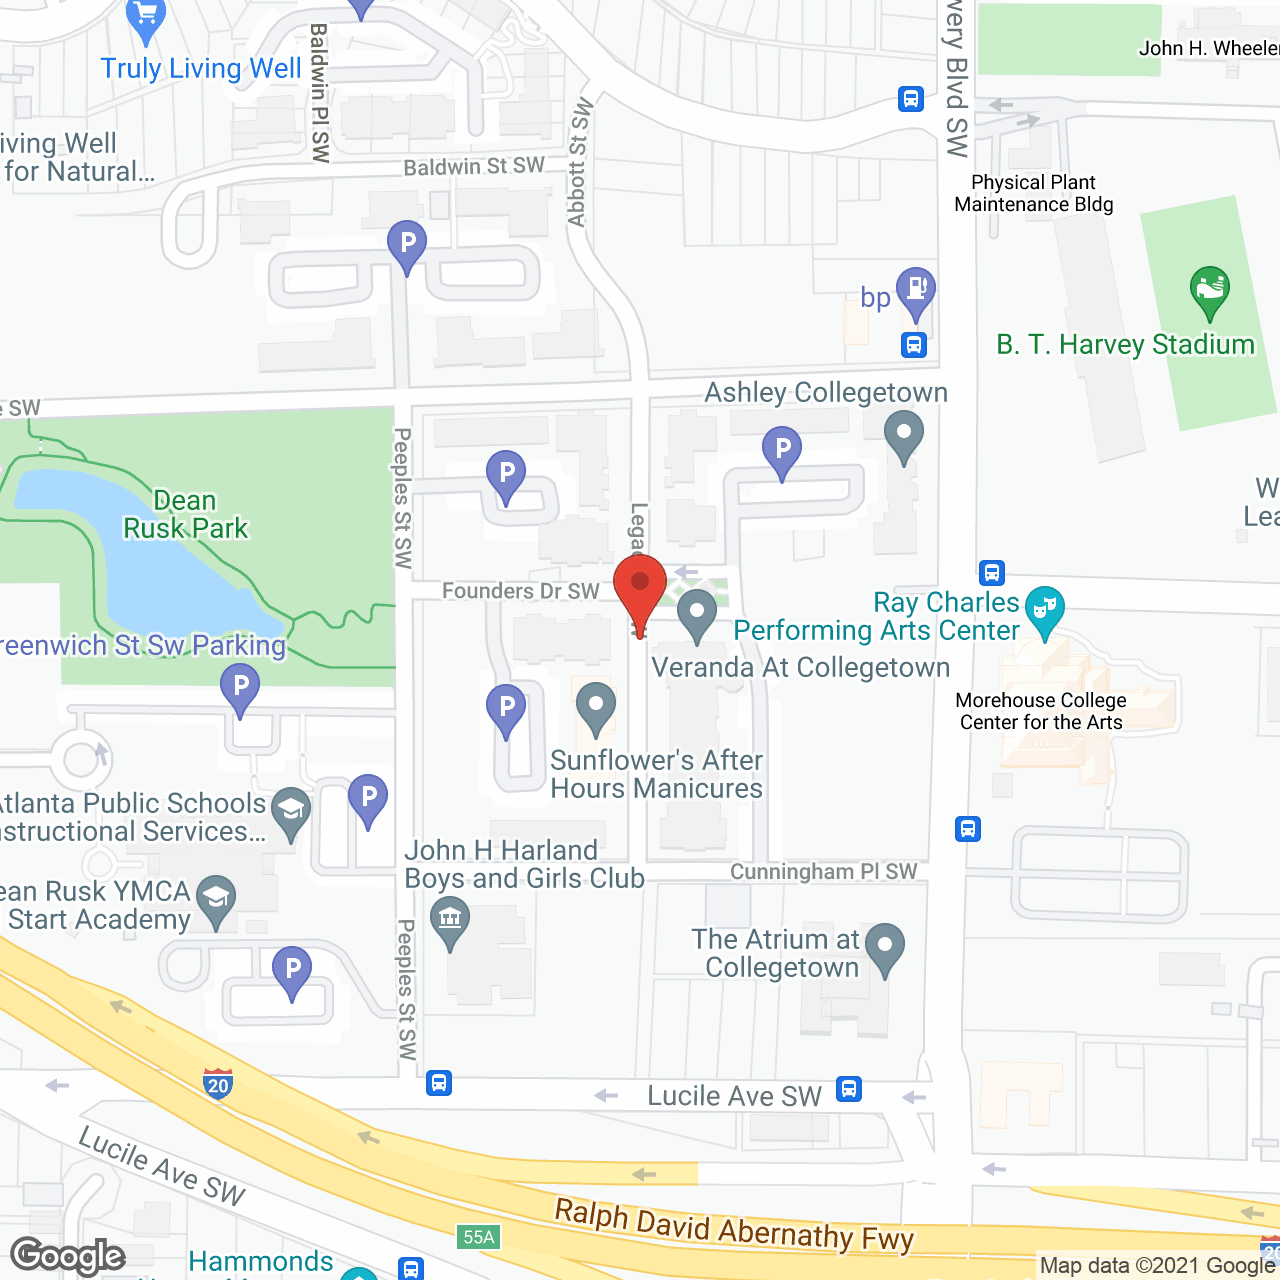 Veranda At Collegetown in google map